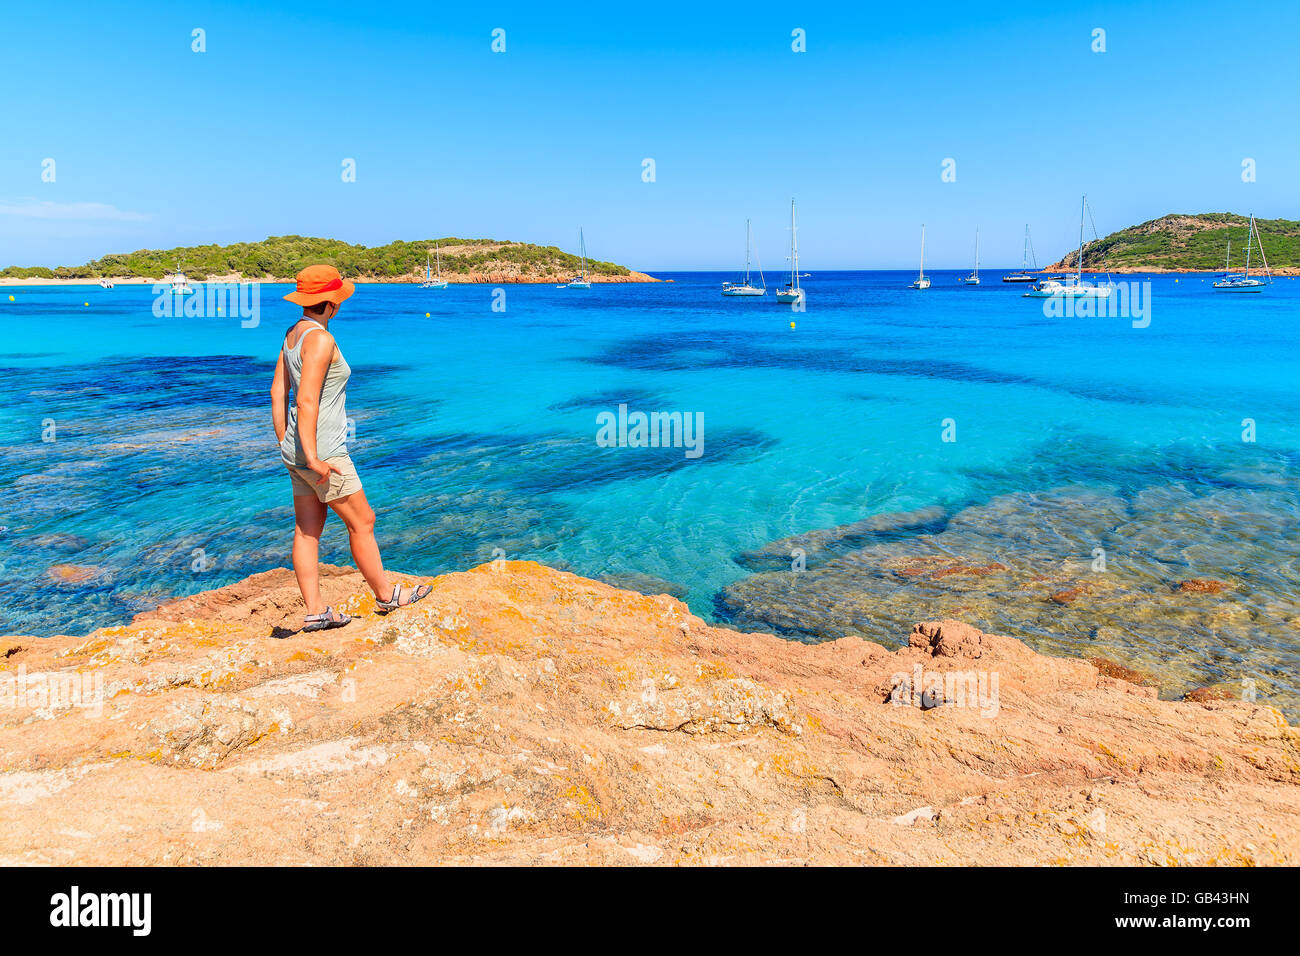 Jeune femme debout sur le roc et touristiques à l'eau de mer à l'azure de la baie de Santa giulia, Corse, France Banque D'Images